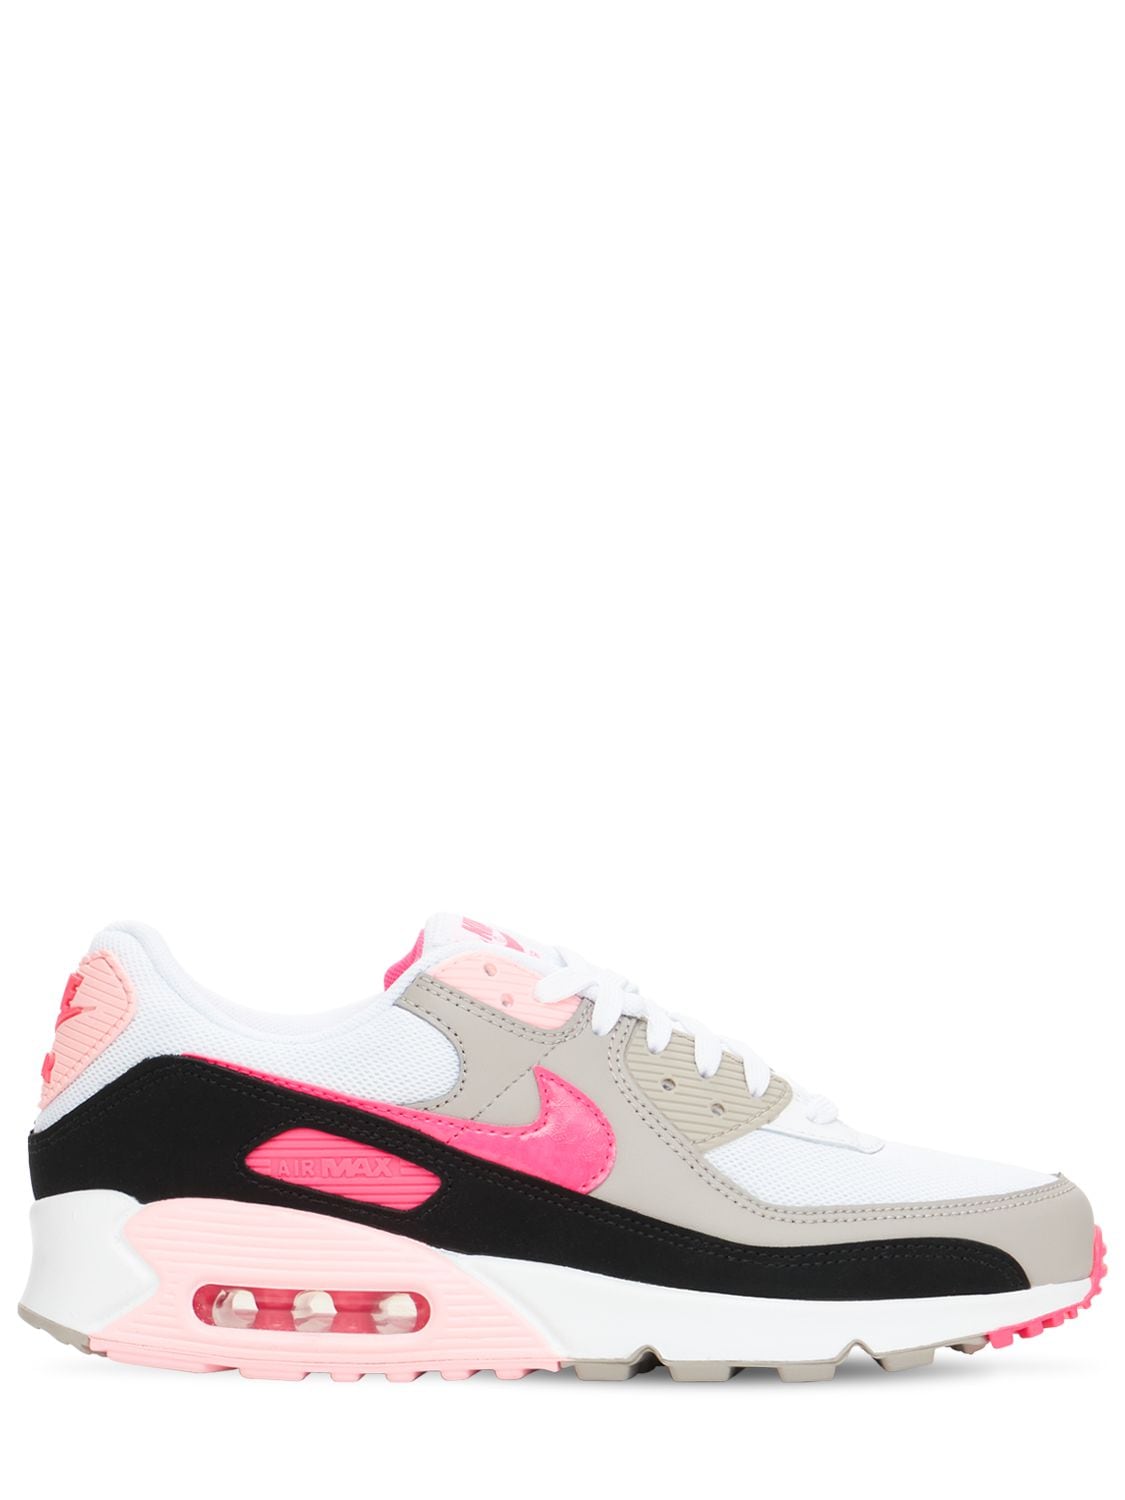 Nike - Air max 90 sneakers - White/Pink | Luisaviaroma